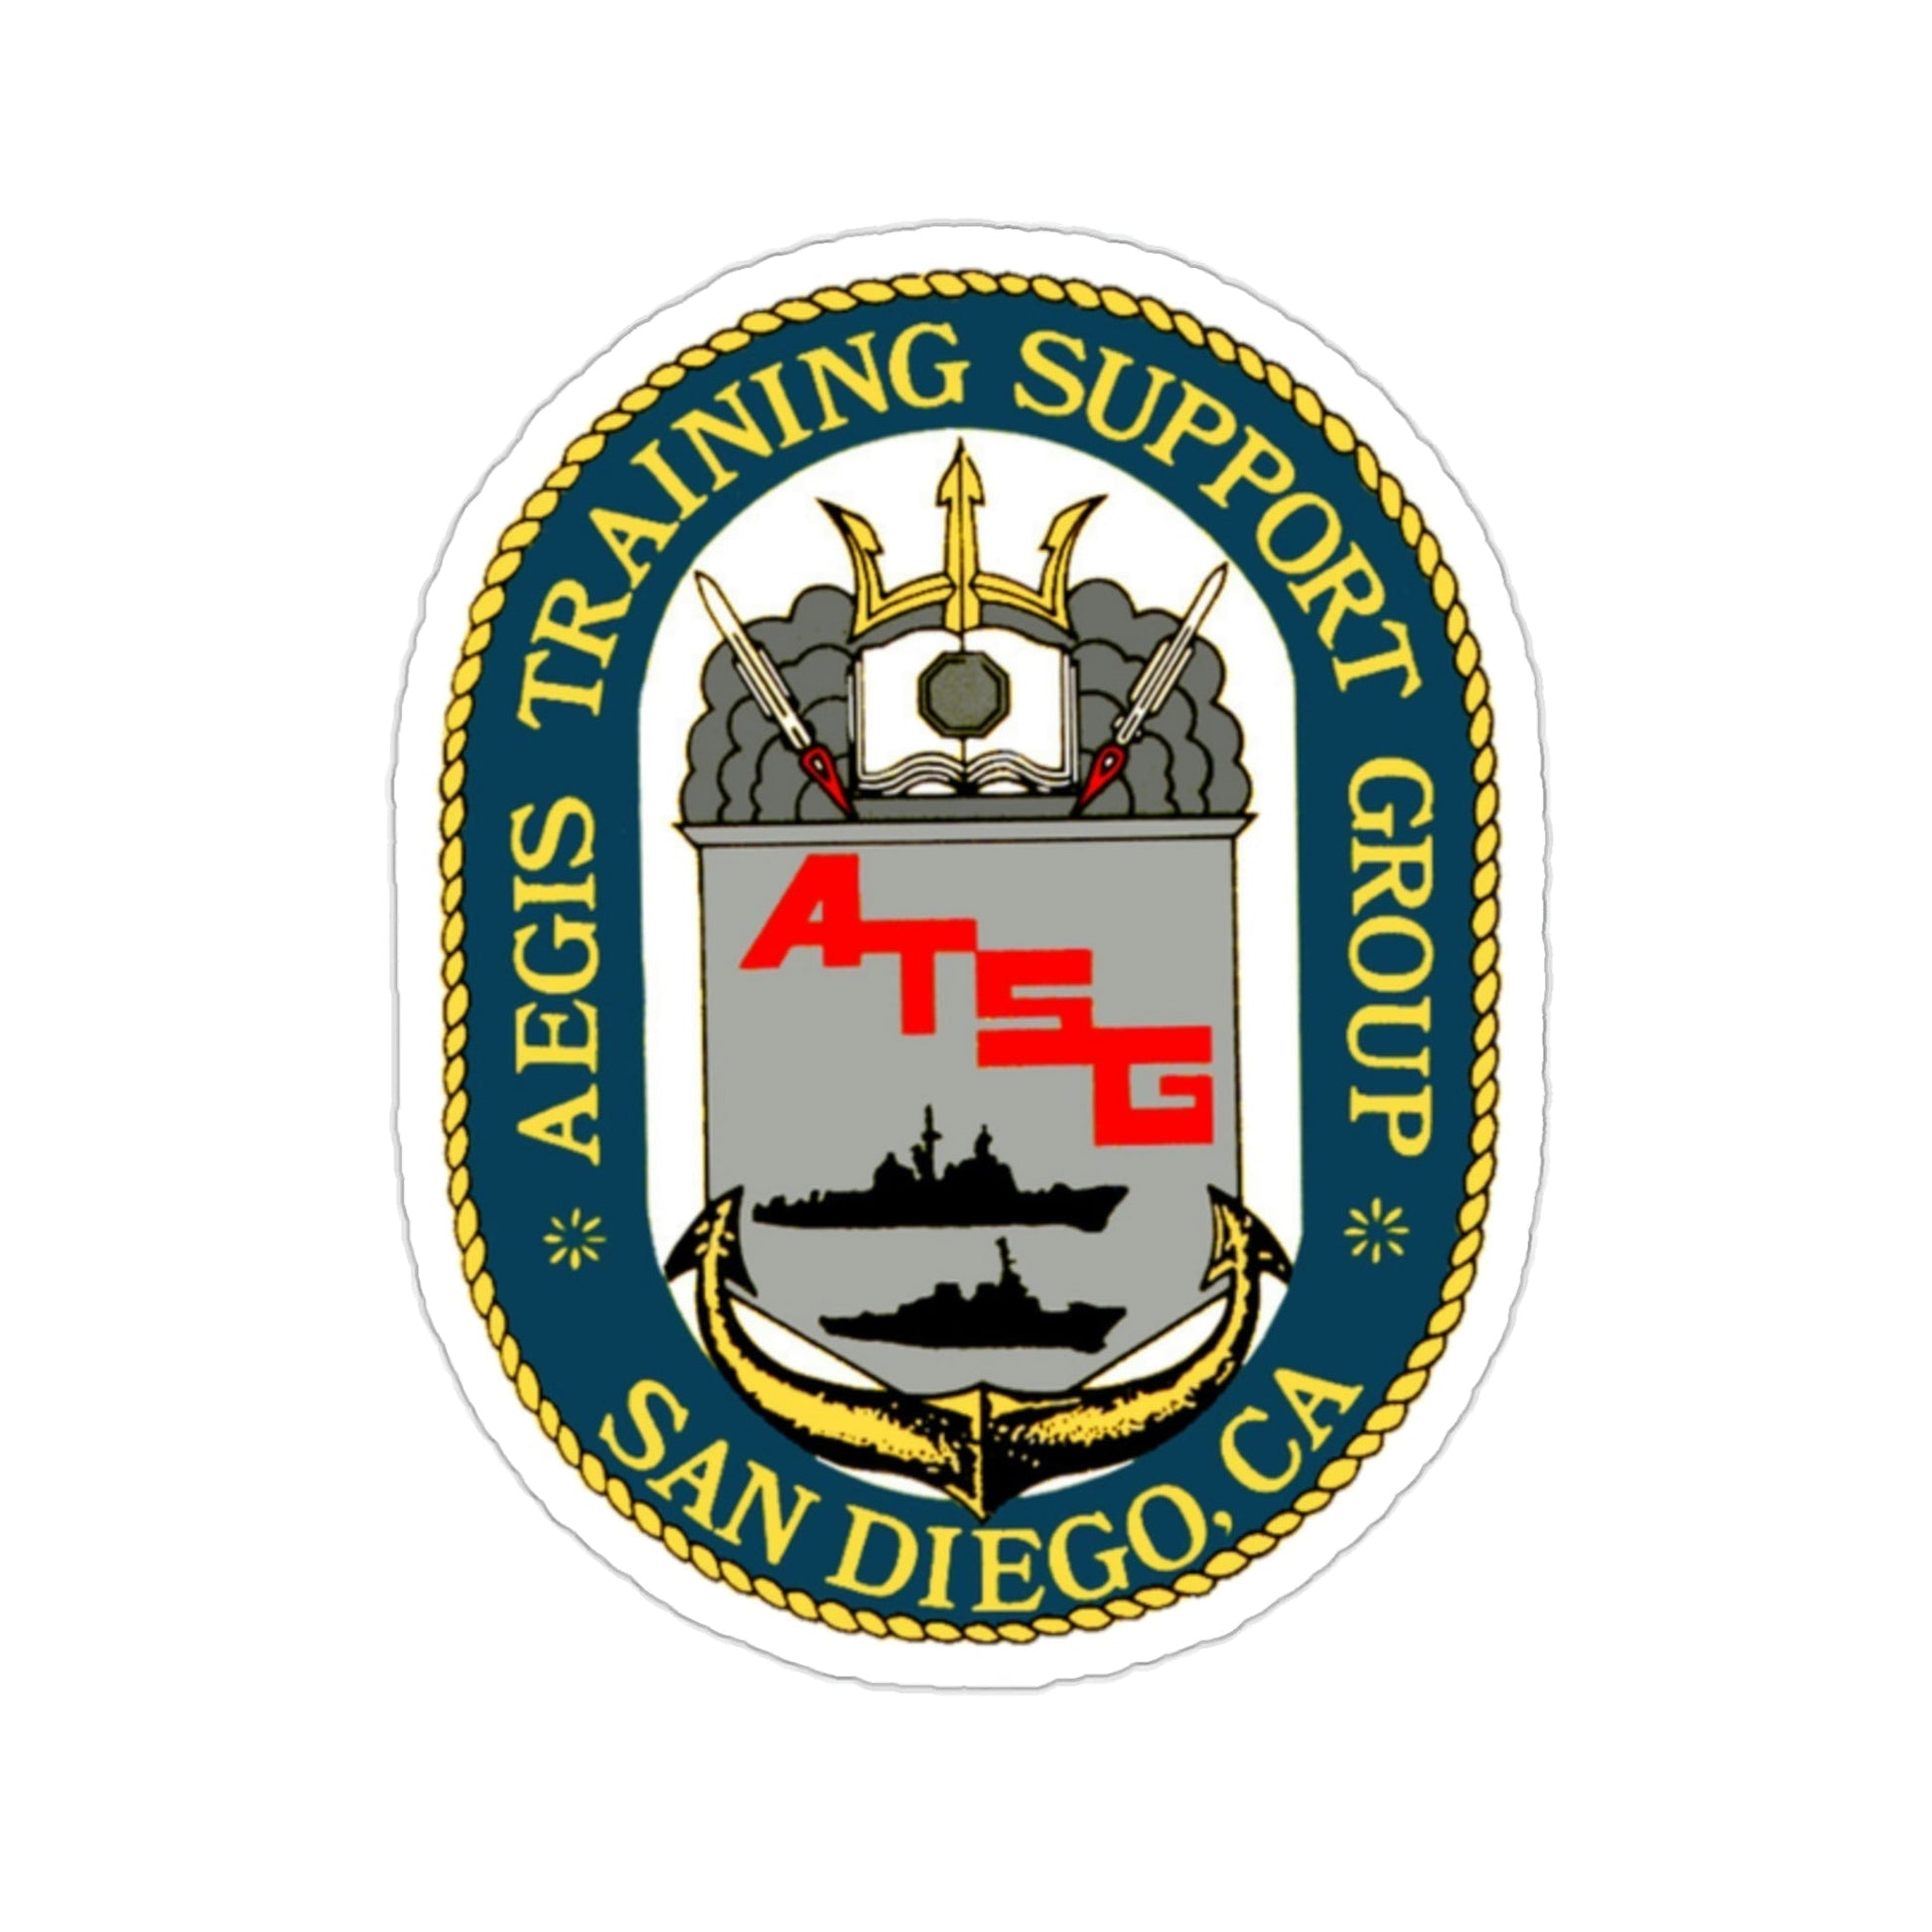 AEGIS Training Support Grp San Diego (U.S. Navy) STICKER Vinyl Die-Cut Decal-2 Inch-The Sticker Space